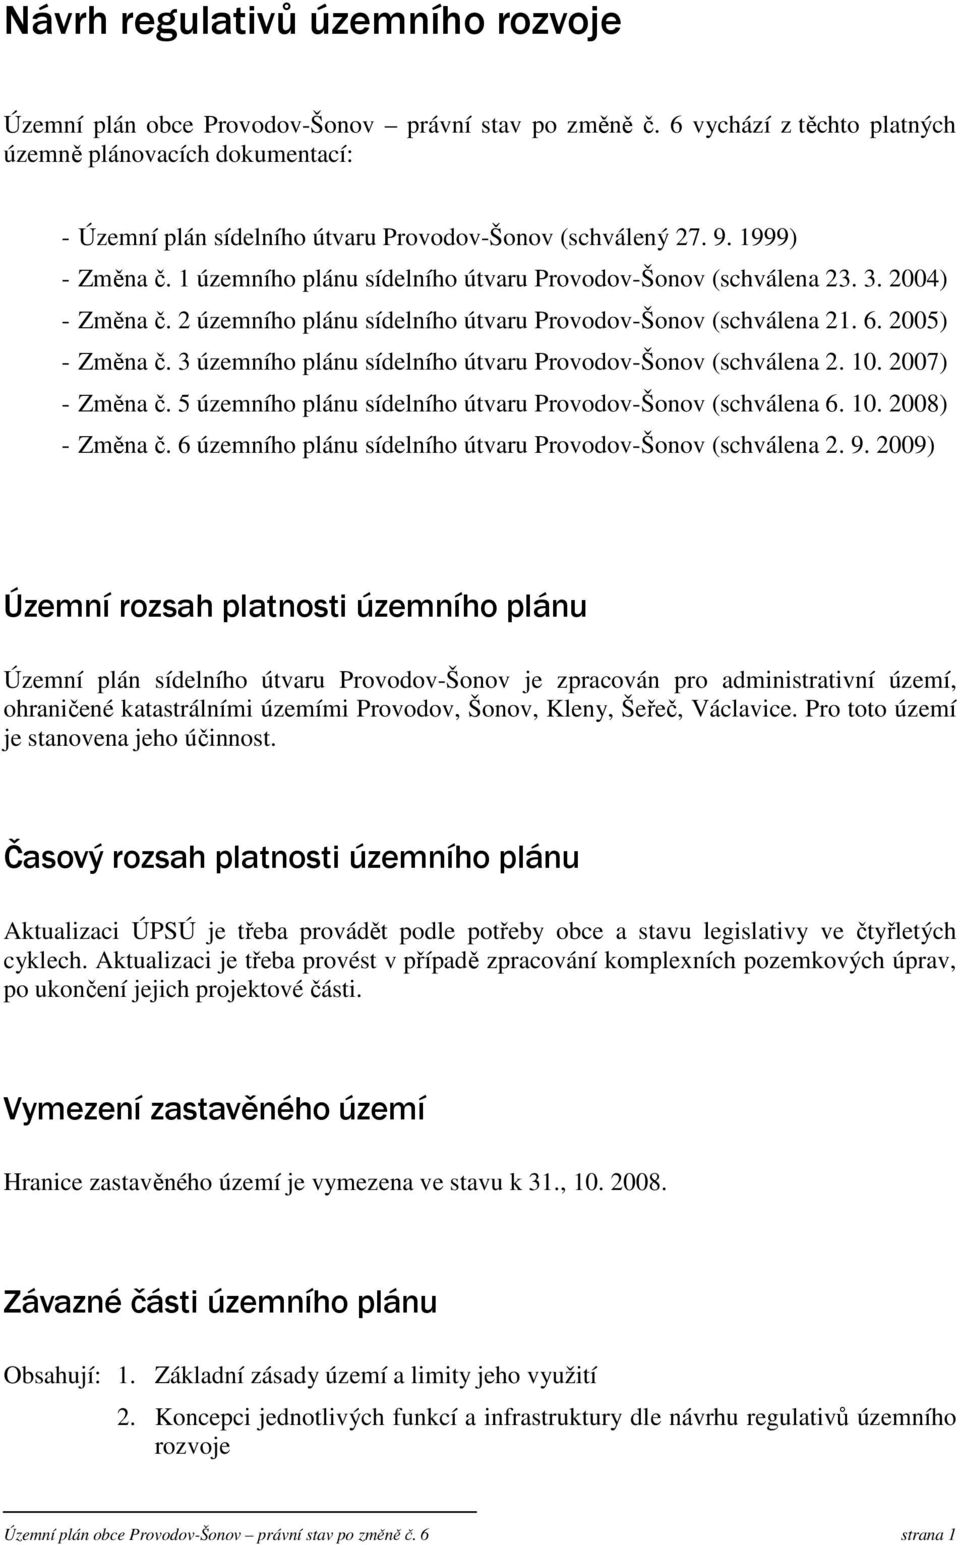 1 územního plánu sídelního útvaru Provodov-Šonov (schválena 23. 3. 2004) - Změna č. 2 územního plánu sídelního útvaru Provodov-Šonov (schválena 21. 6. 2005) - Změna č.